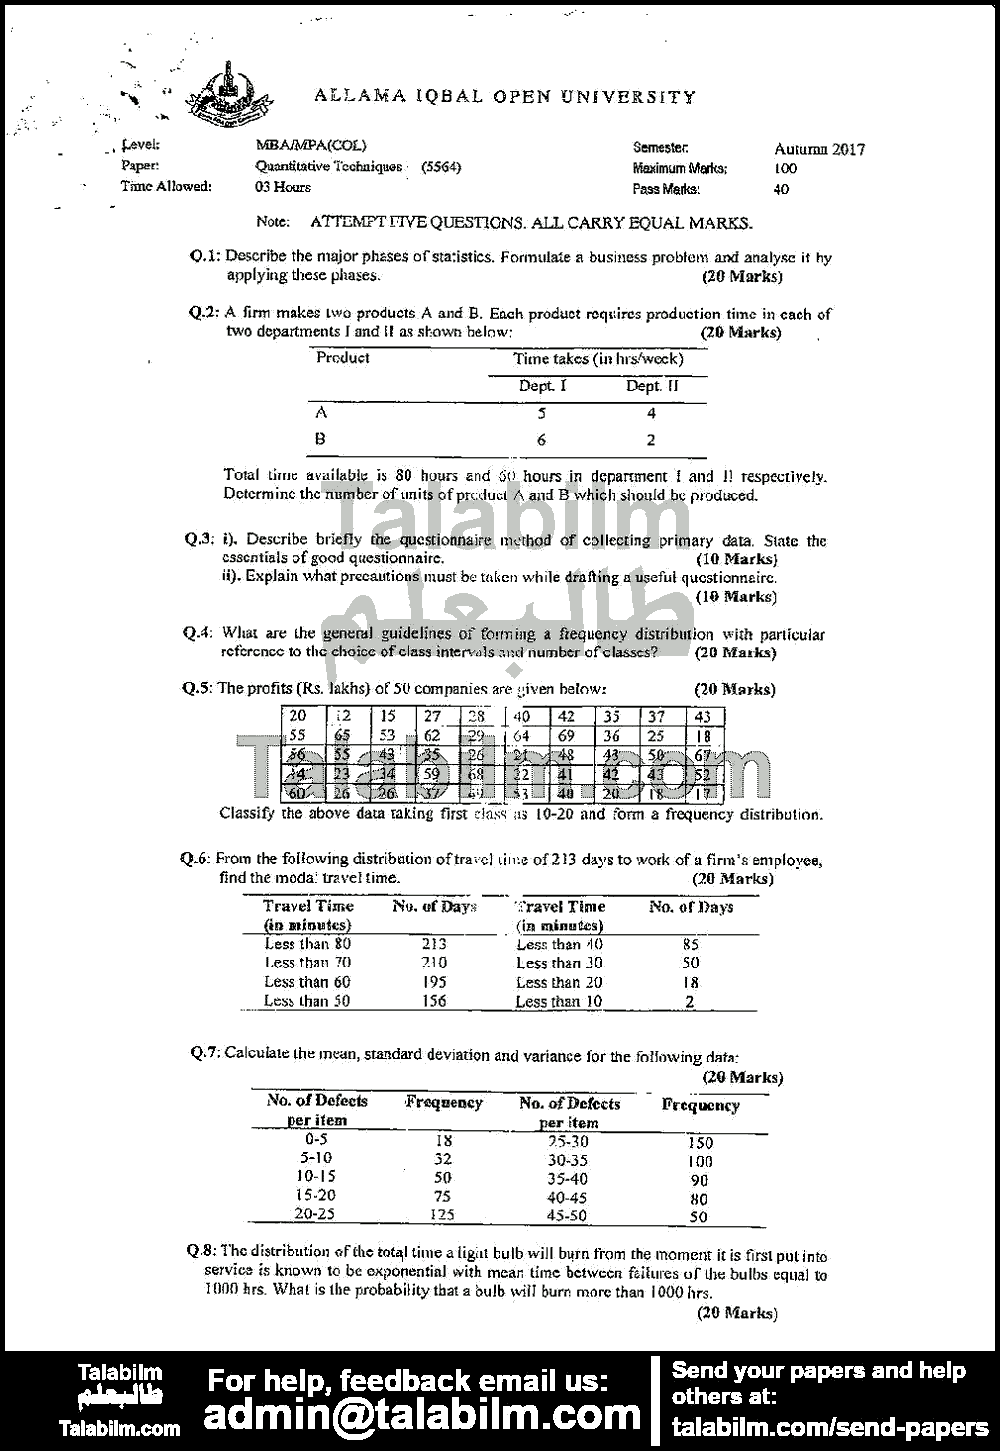 Quantitive Techniques 5564 past paper for Autumn 2017